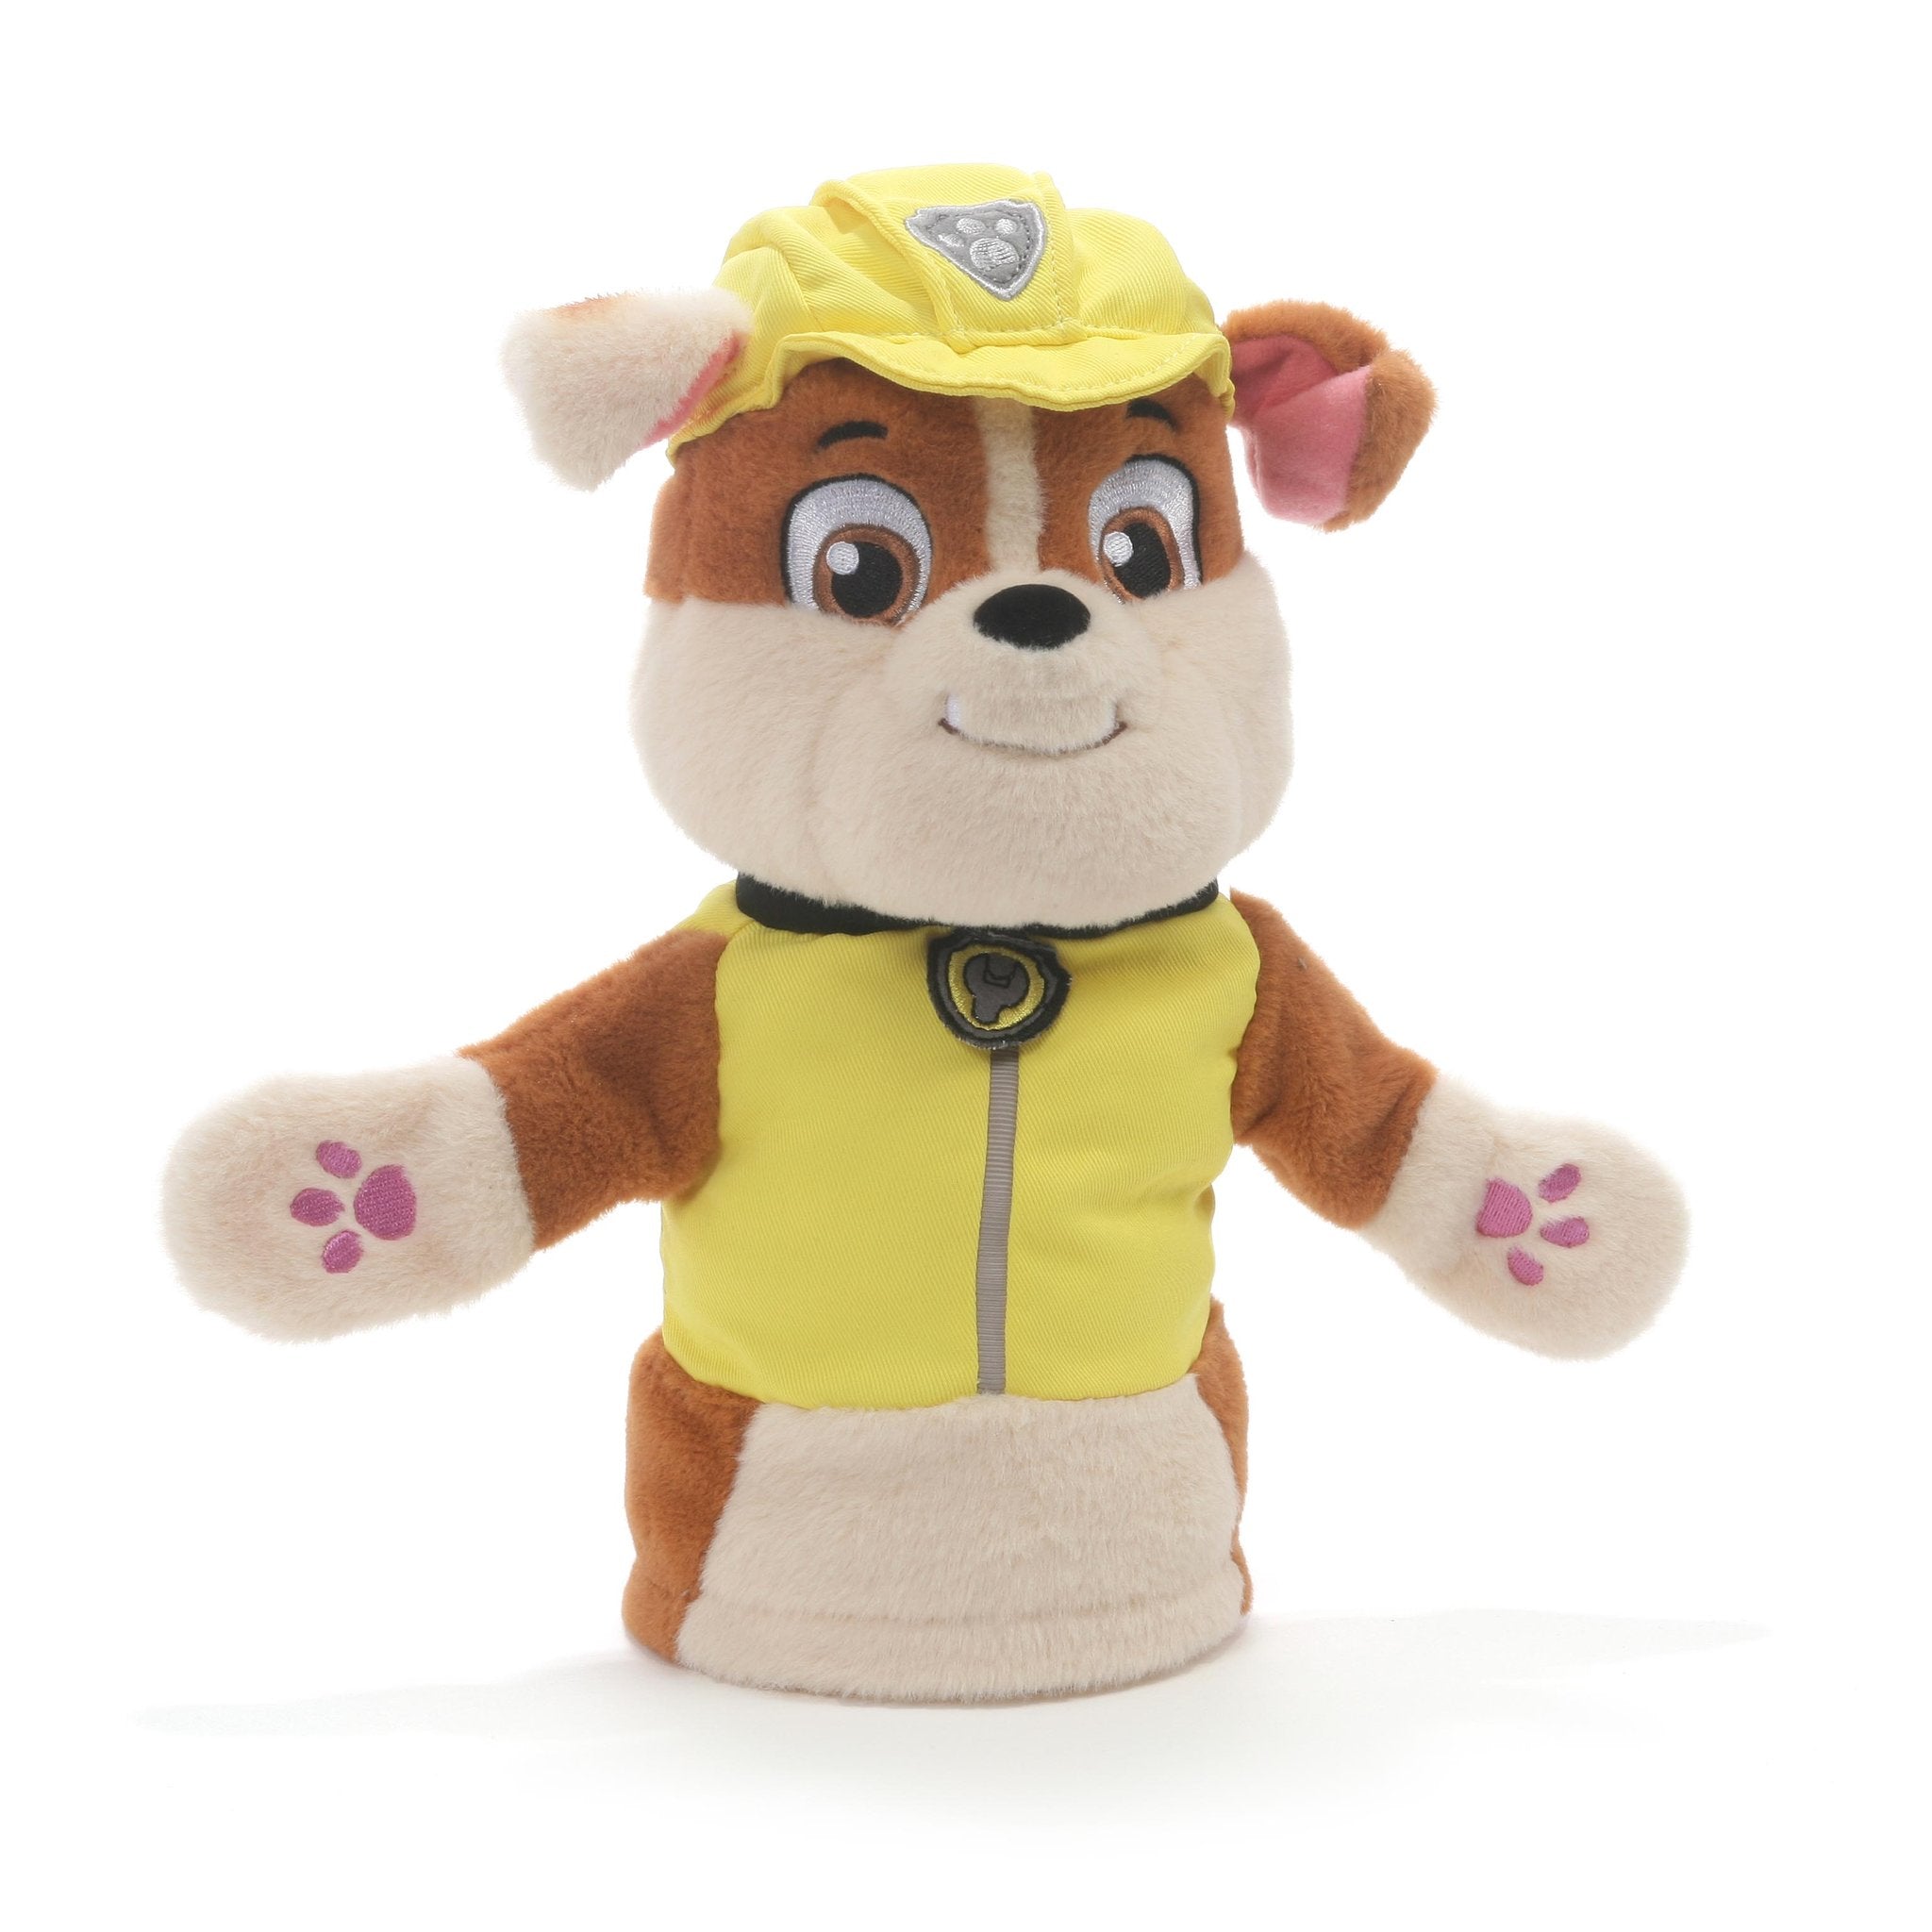 GUND Paw Patrol Rubble Hand Puppet Plush Stuffed Animal Dog, Yellow, 11